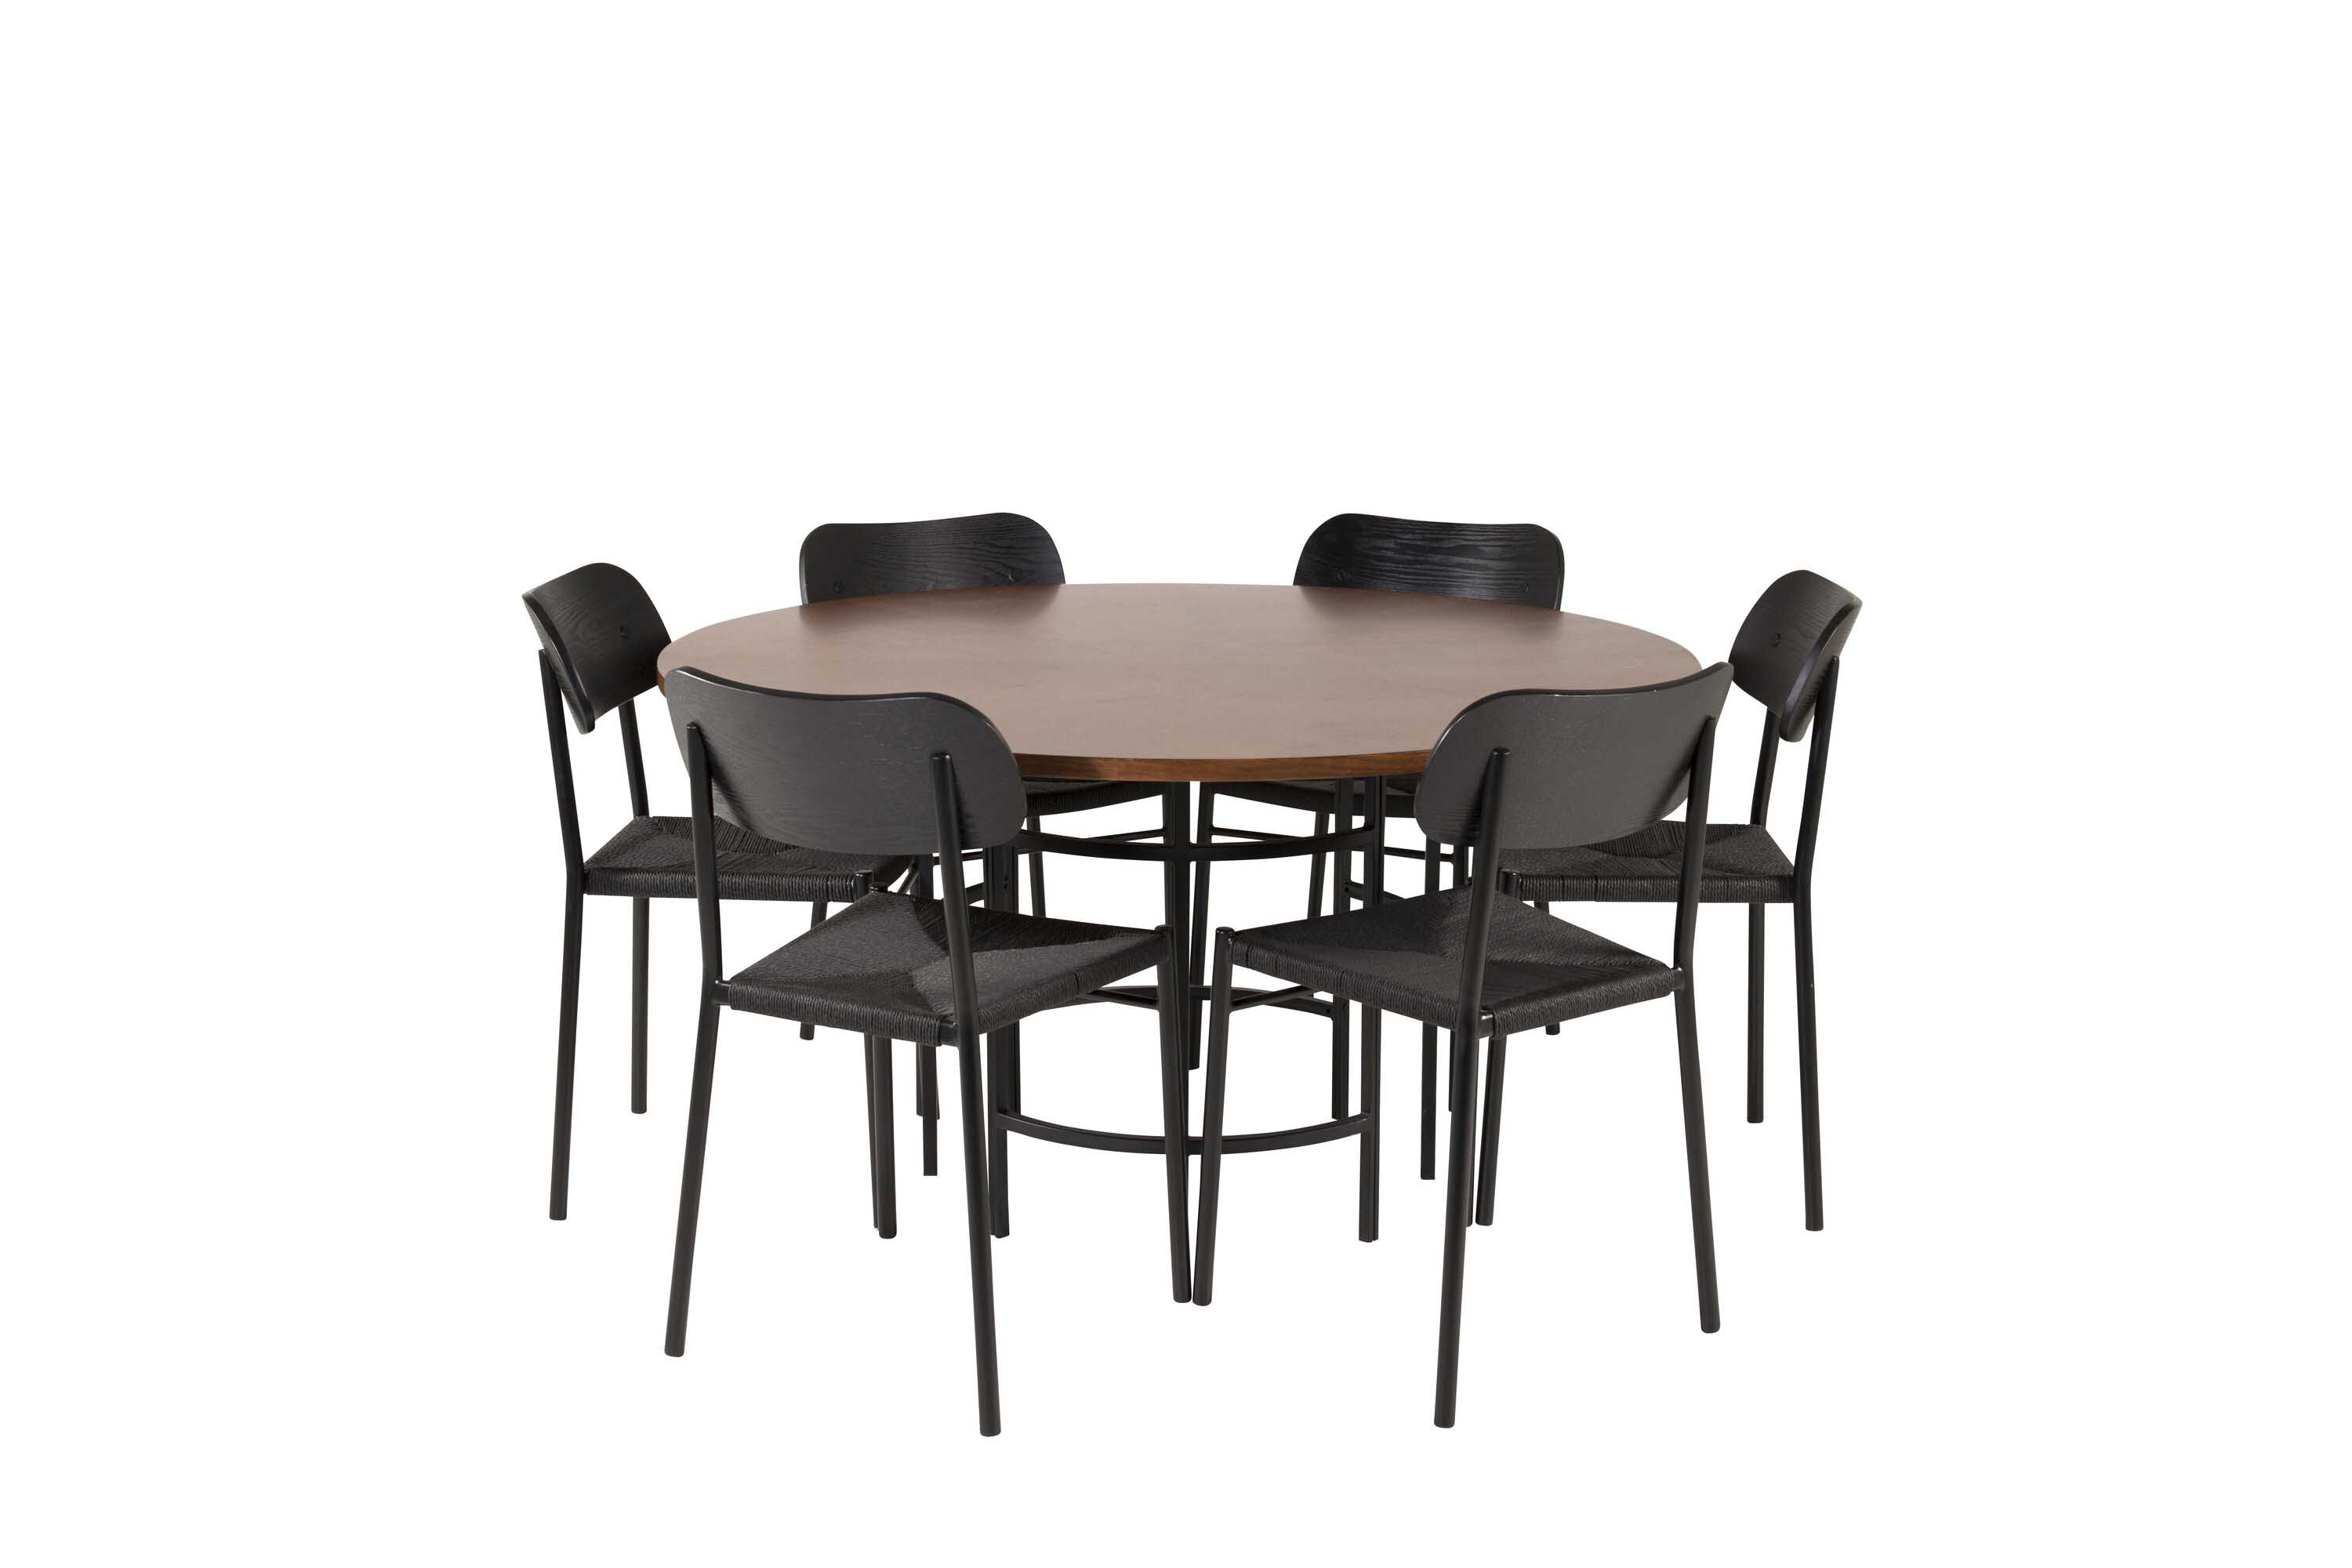 Venture Design Copenhagen & Polly spisegruppe Brun/svart 6 st stoler & bord 140 cm